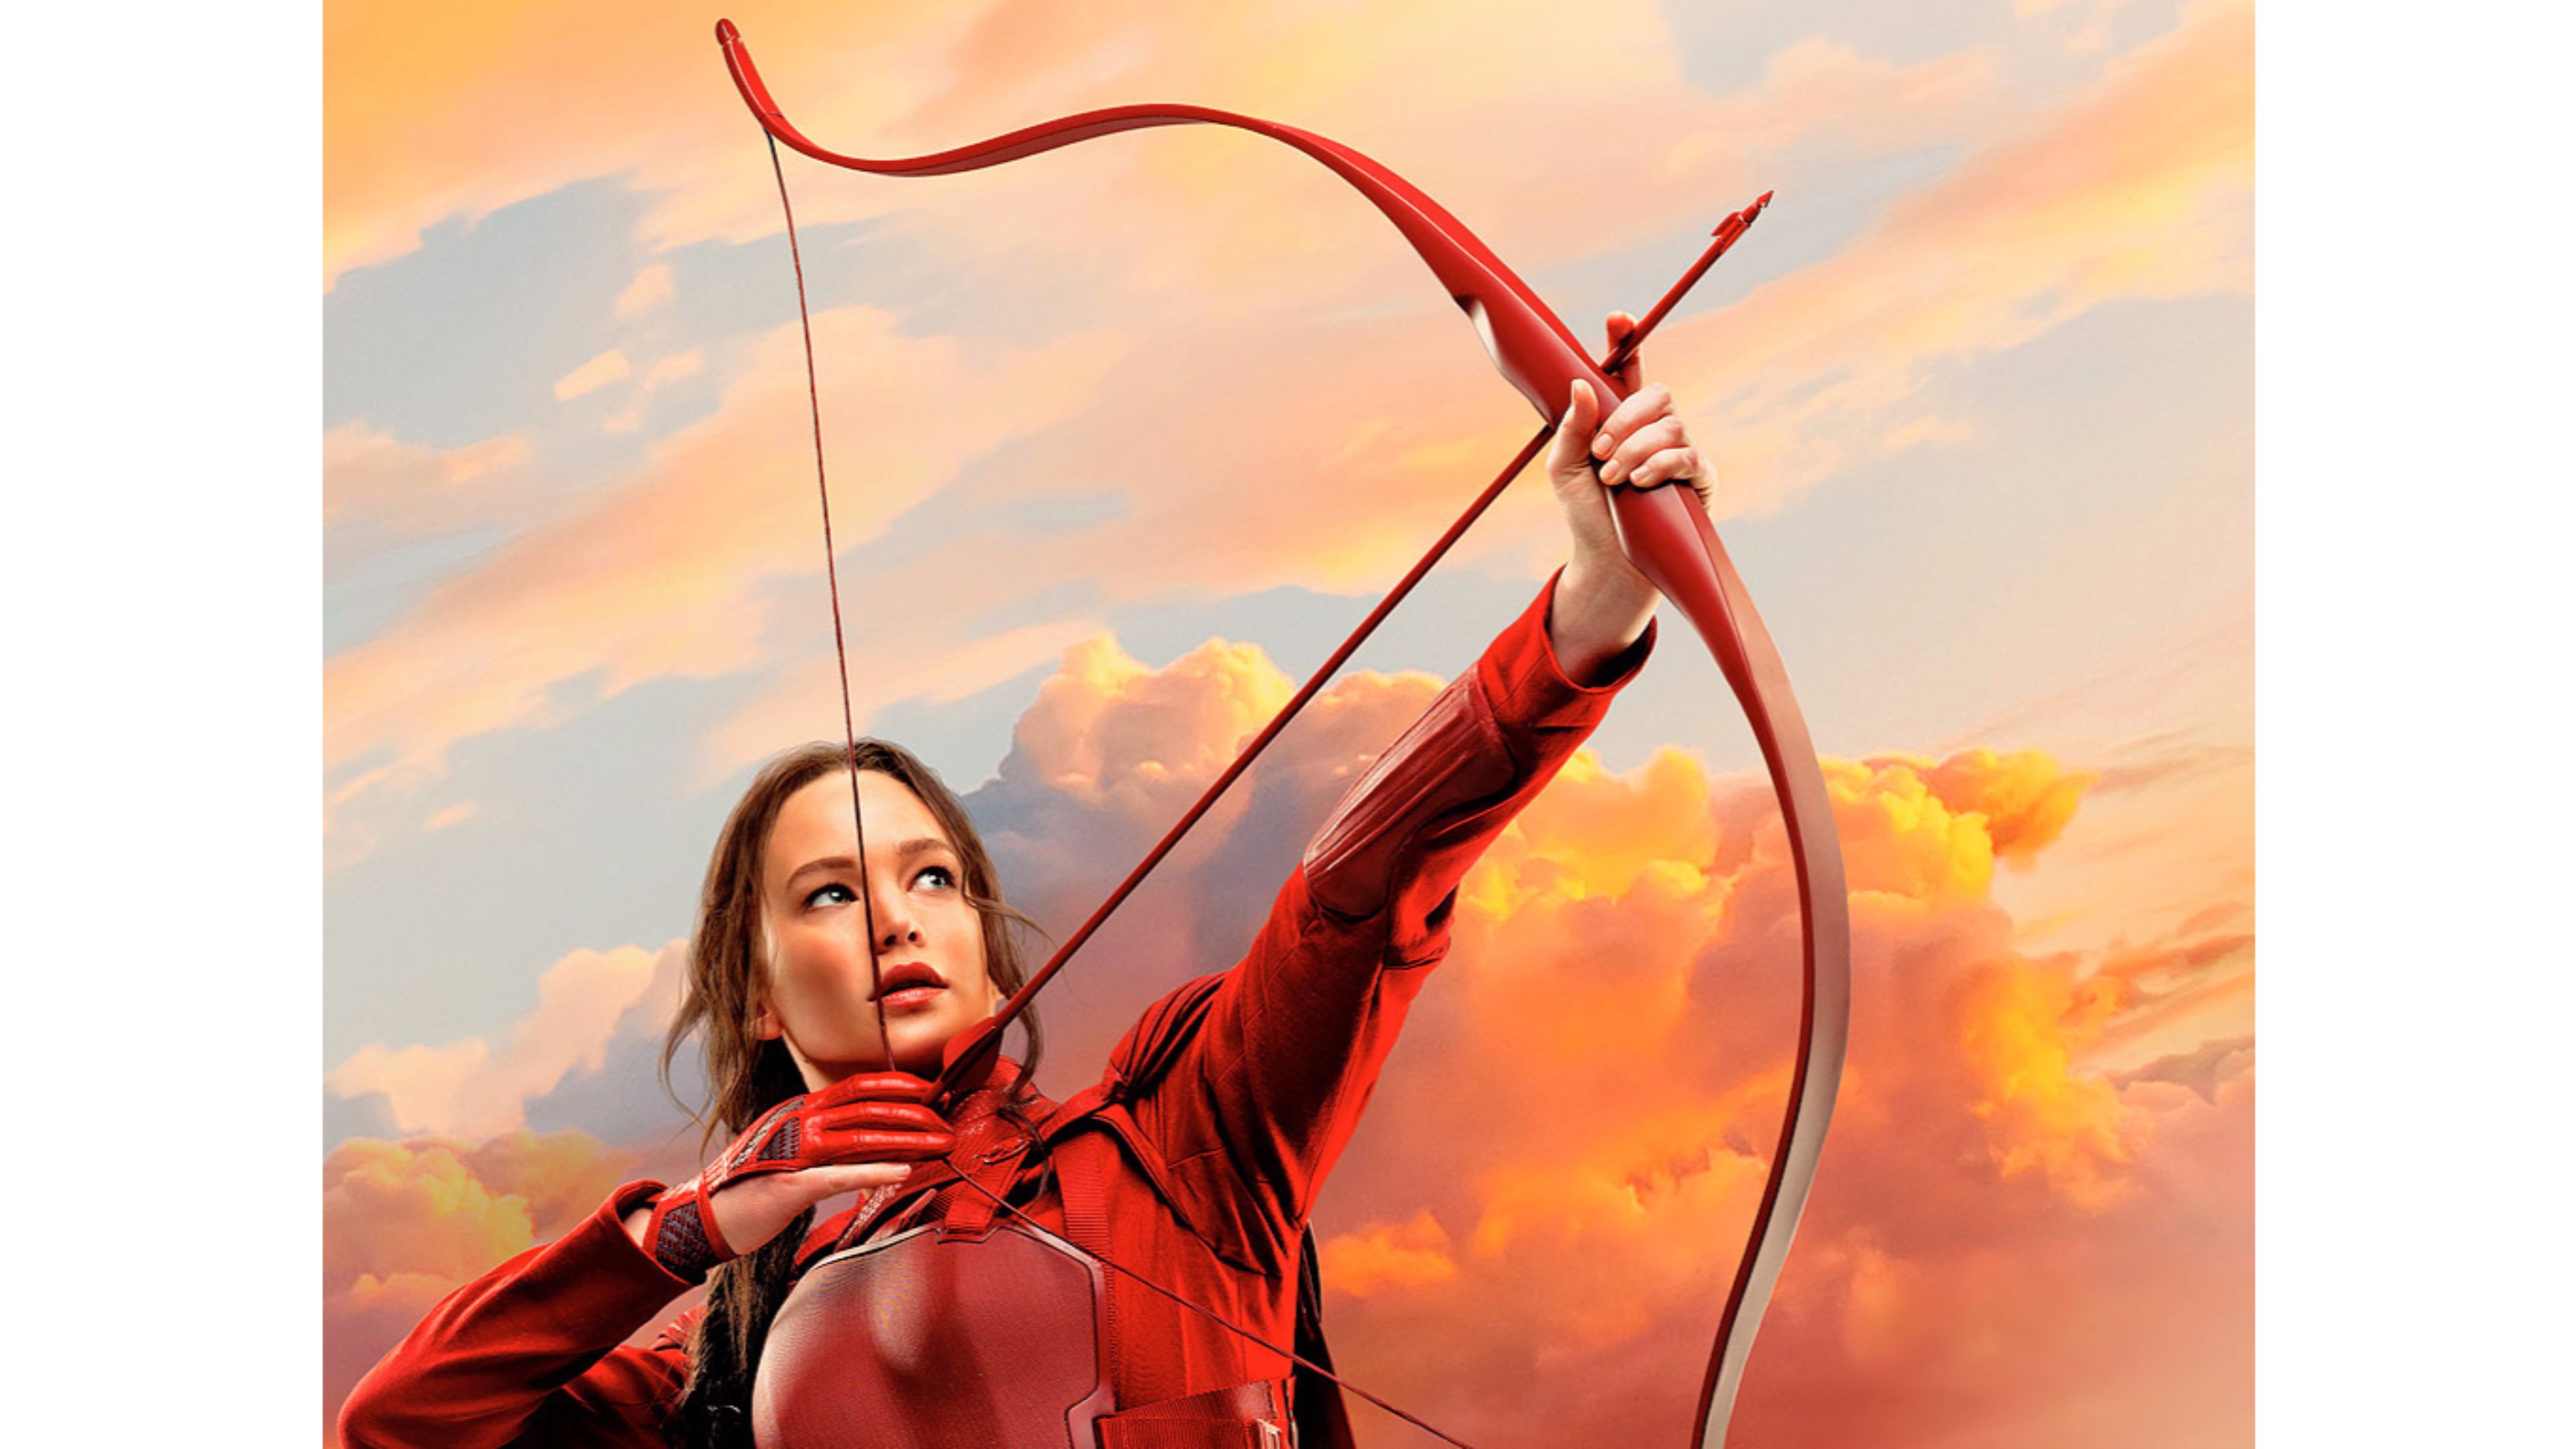 Hunger Games Wallpaper 4k , HD Wallpaper & Backgrounds